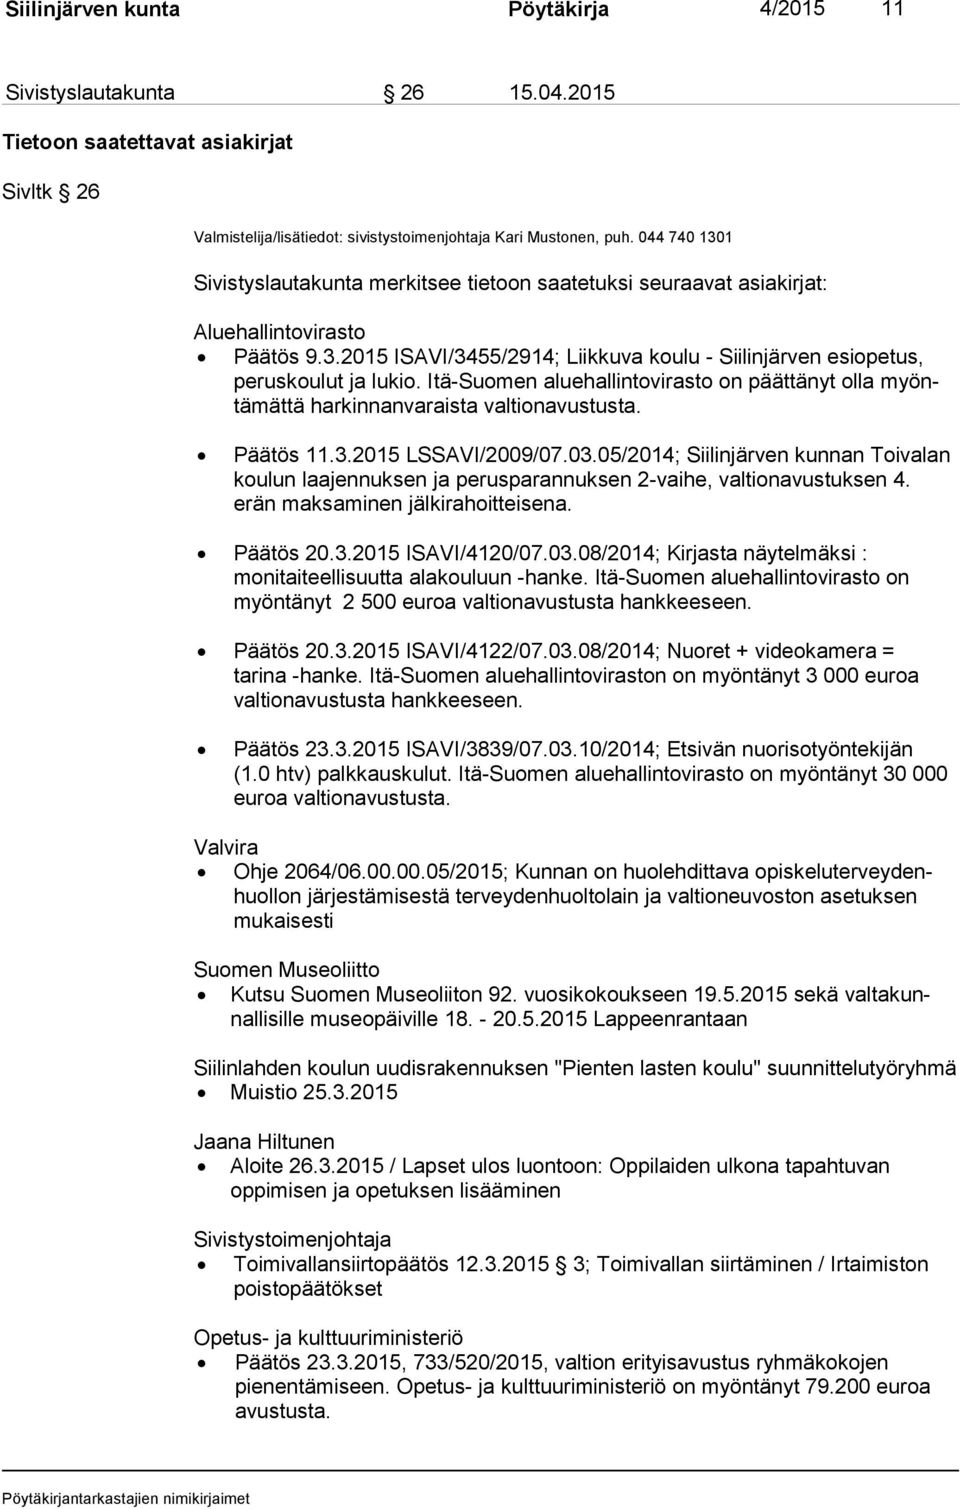 Itä-Suomen aluehallintovirasto on päättänyt olla myöntä mät tä harkinnanvaraista valtionavustusta. 11.3.2015 LSSAVI/2009/07.03.